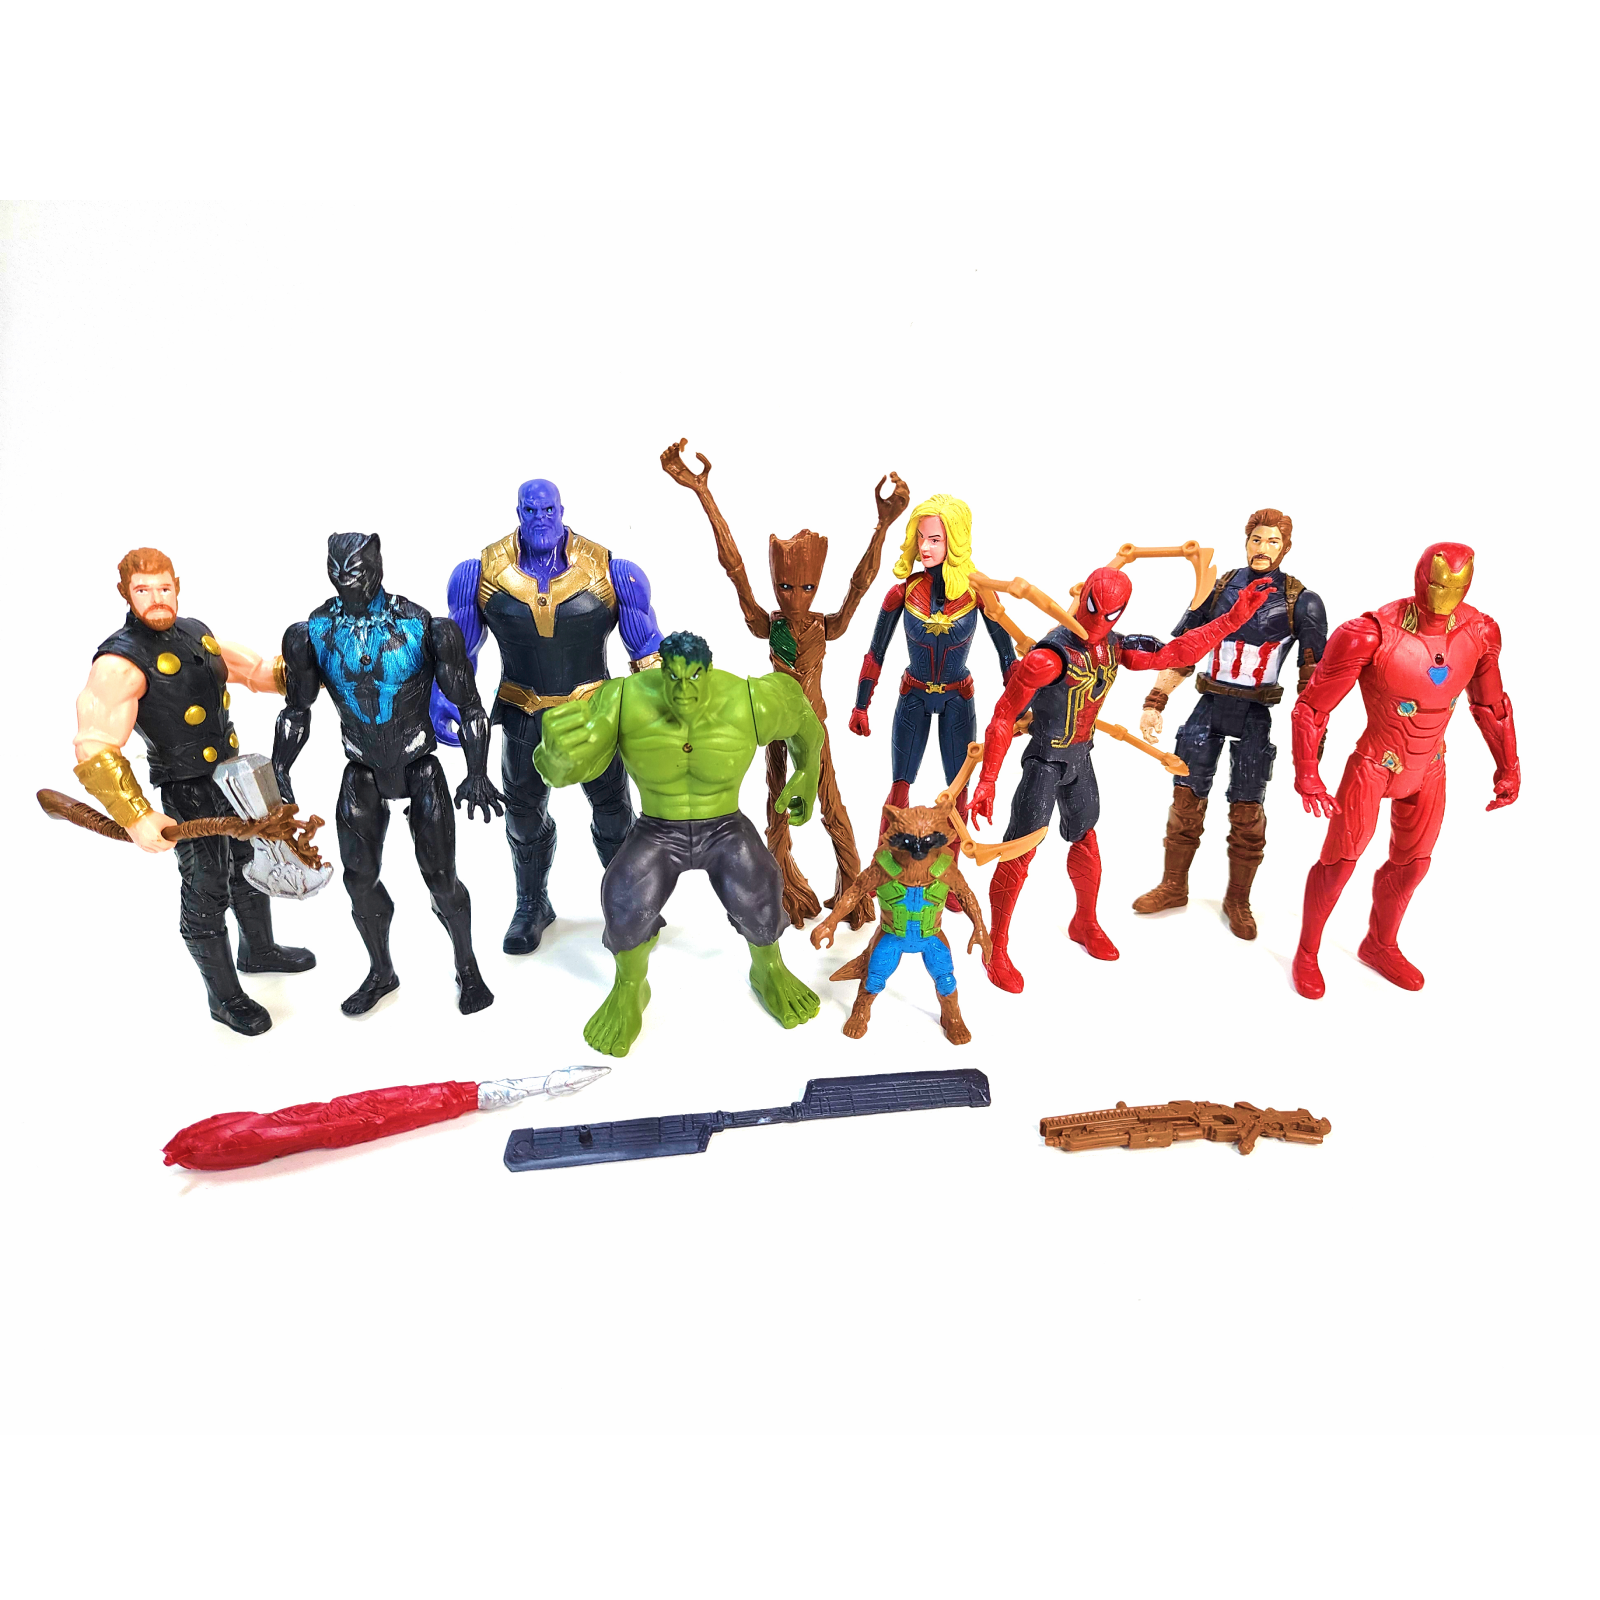 Фигурки супергероев Мстители (Avengers), детский набор игрушек для мальчика